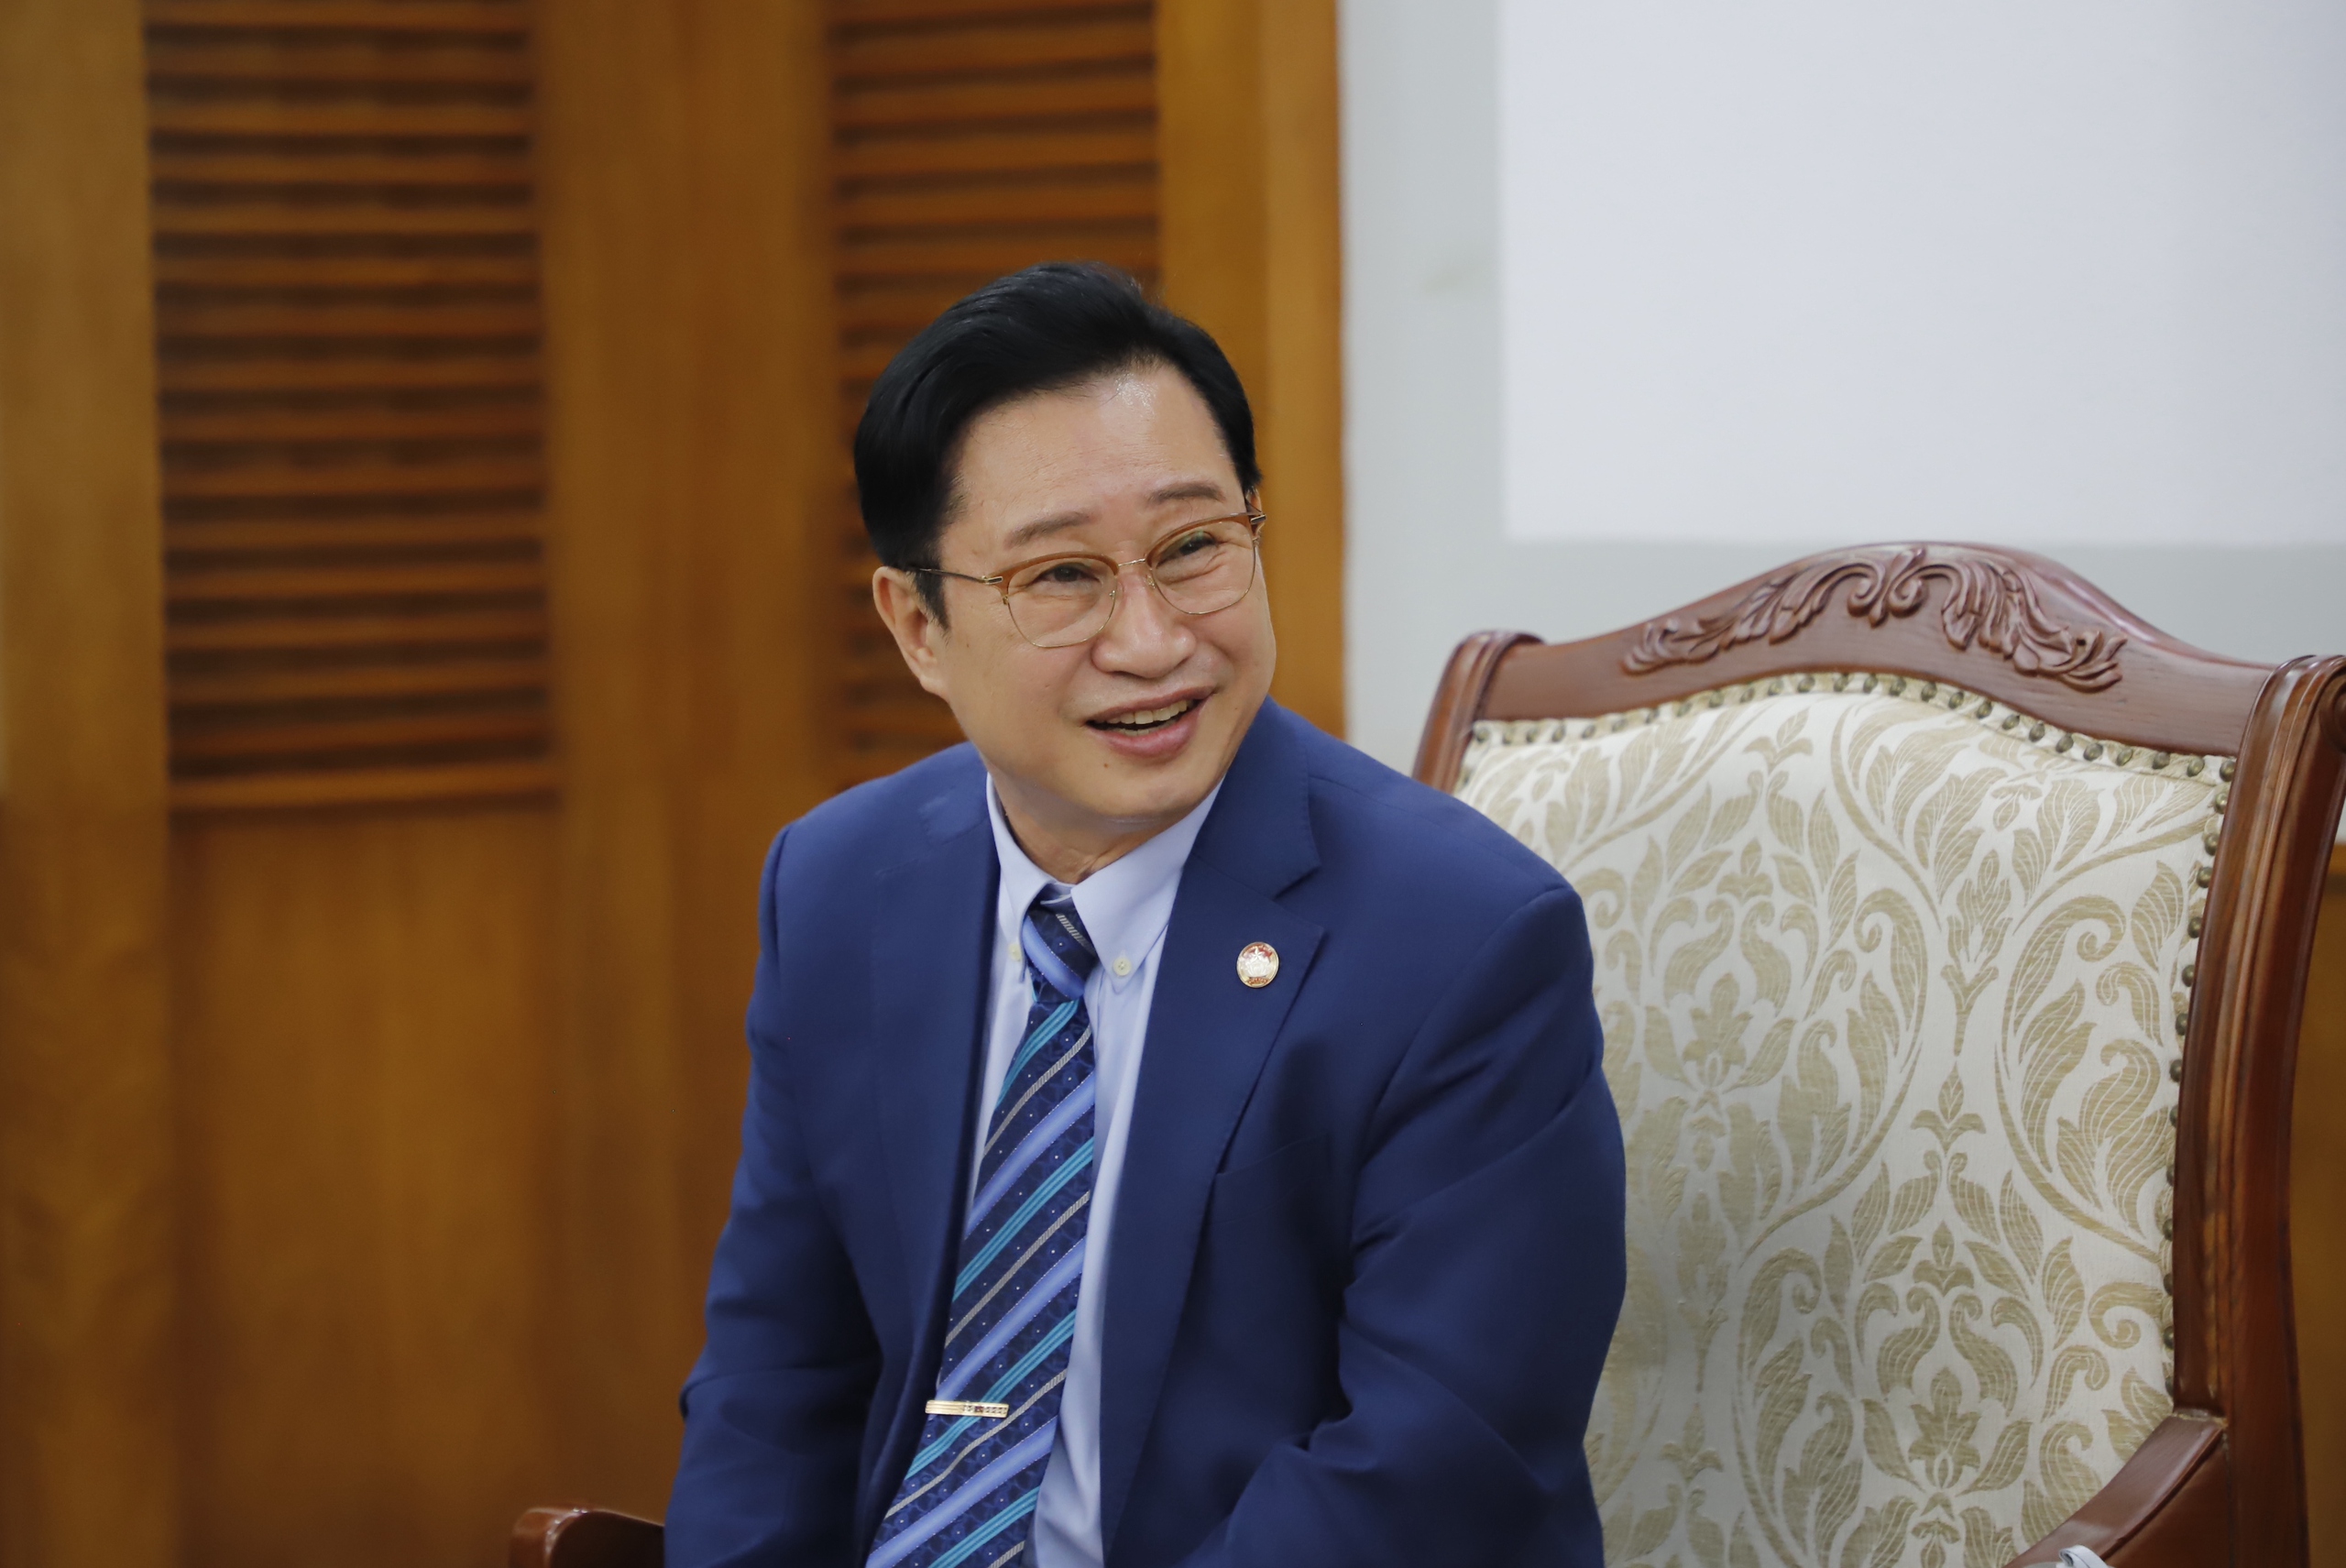 Thứ trưởng Hồ An Phong gặp mặt Đại sứ Du lịch Việt Nam tại Hàn Quốc Lý Xương Căn - Ảnh 2.